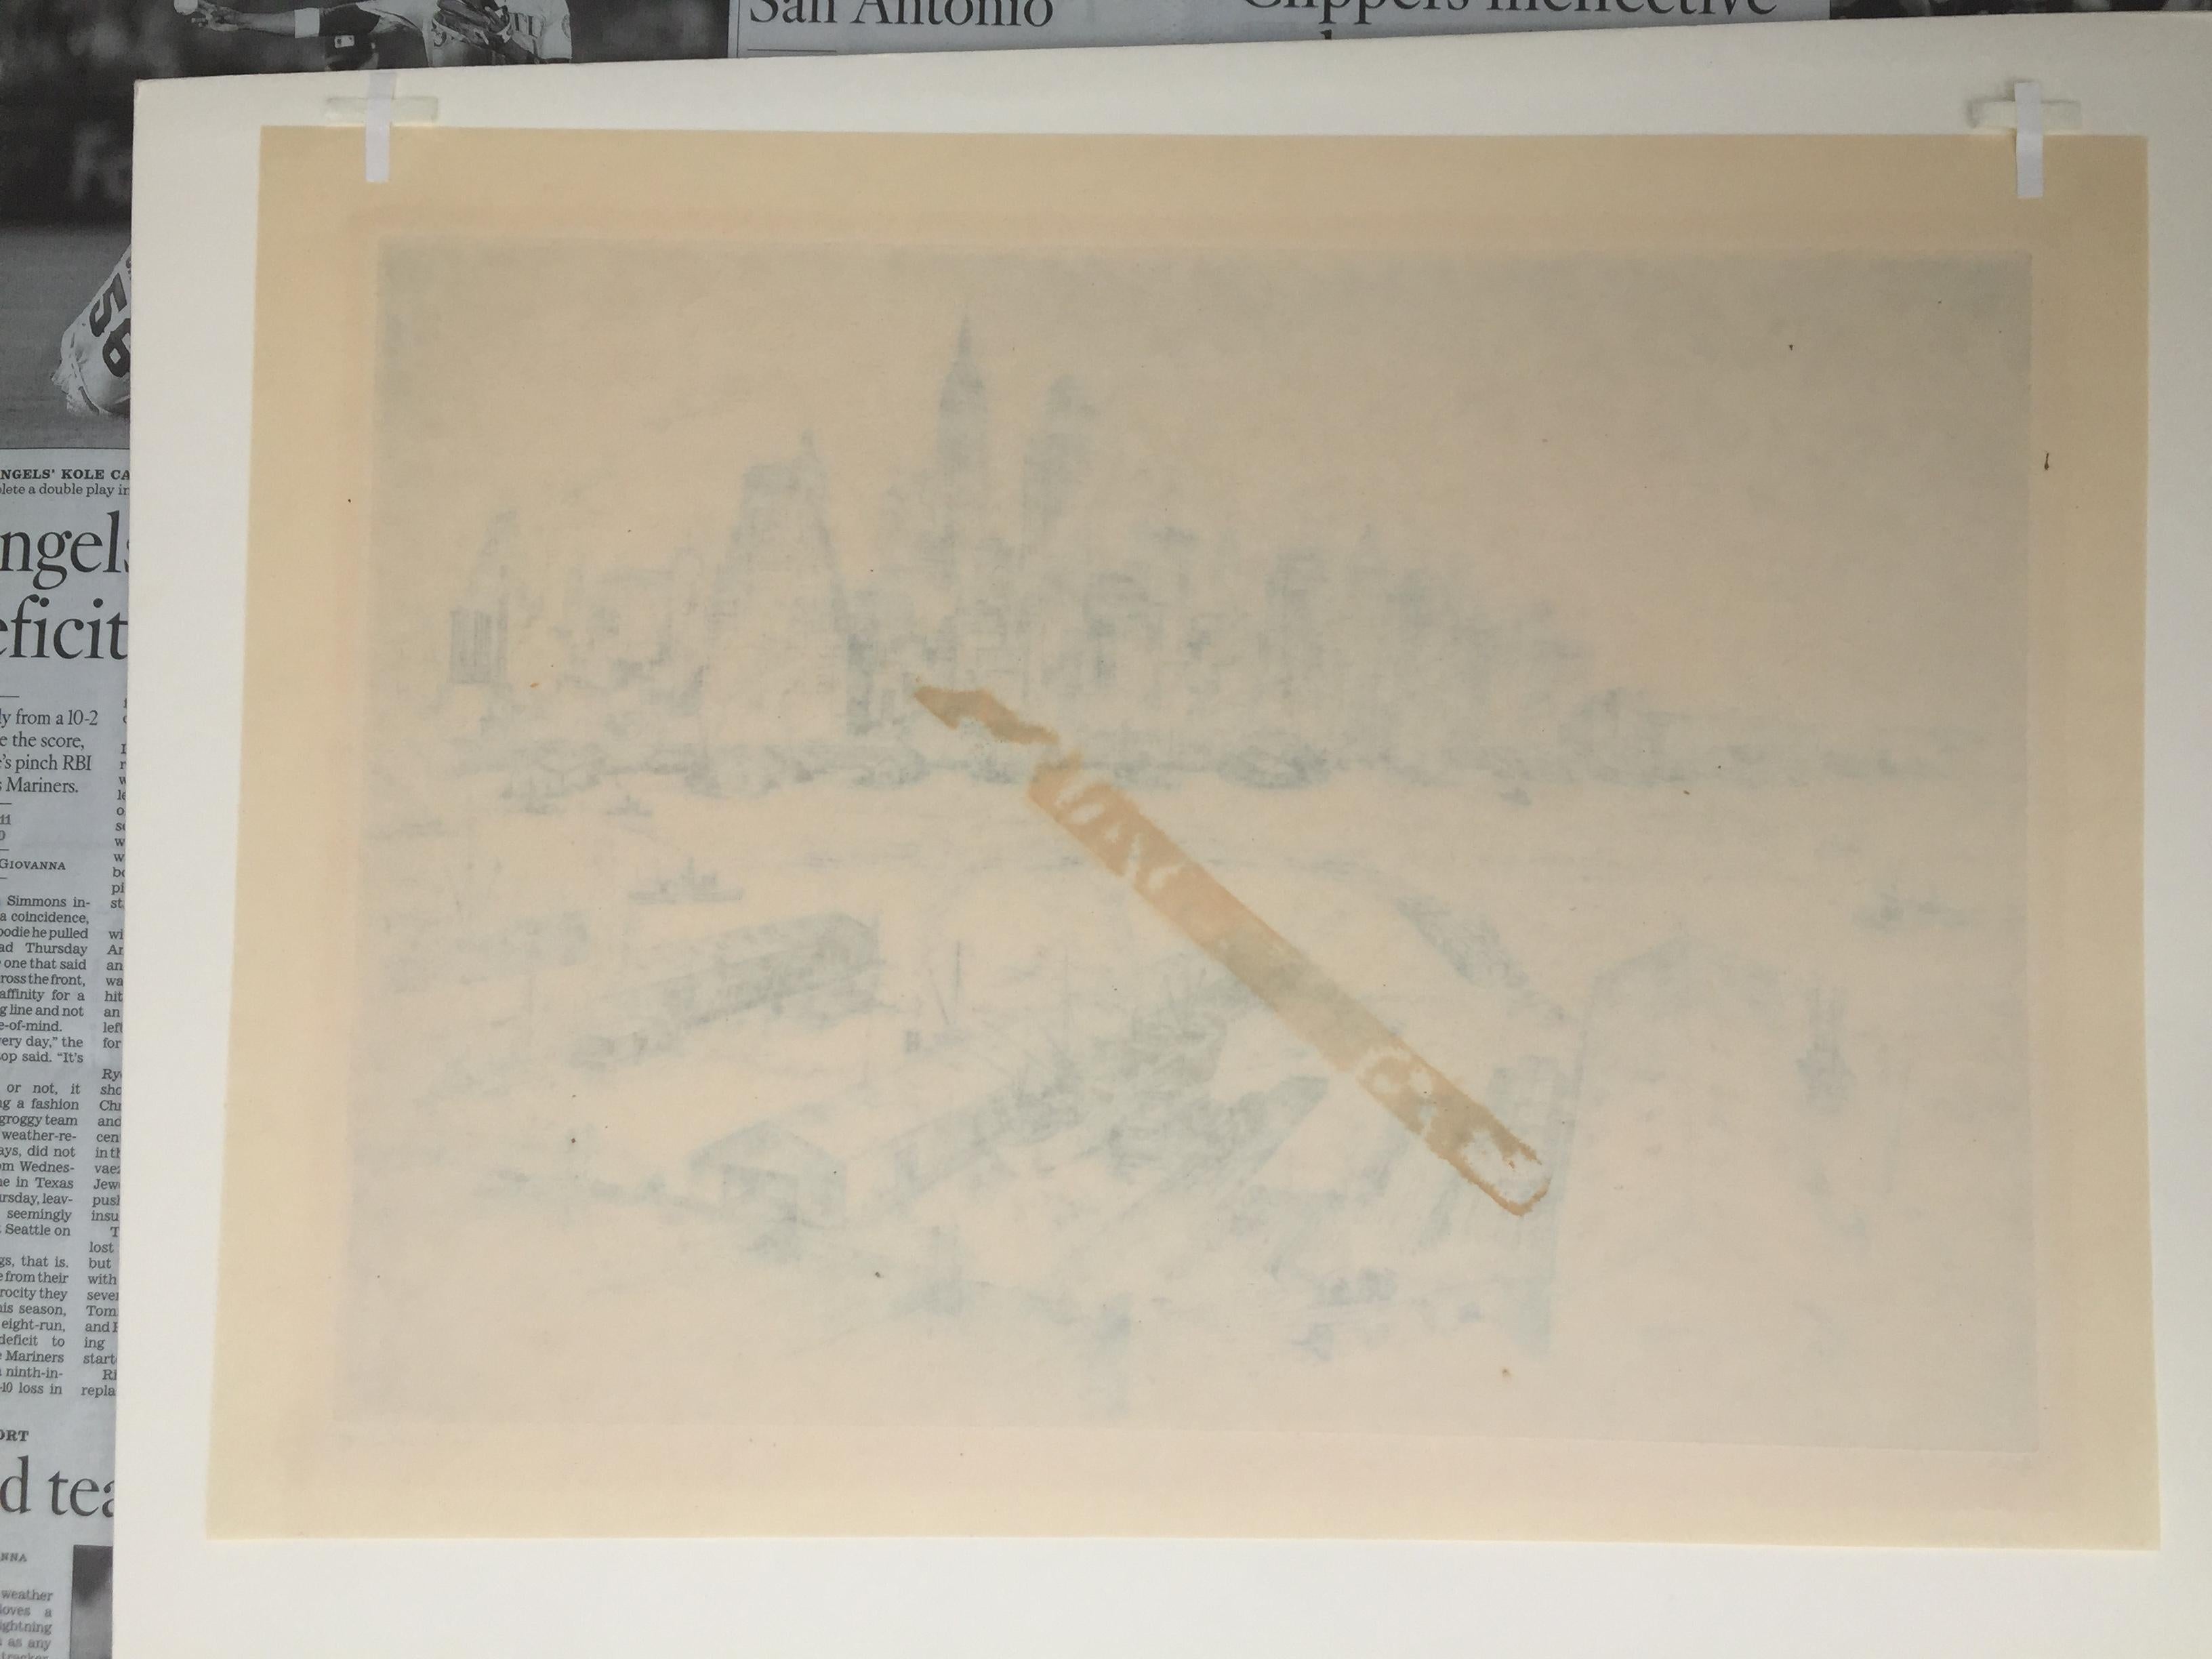 ANTON SCHUTZ

A.I.C. c 1940 
Gravure, signée au crayon, édition 100, no. 15/100. Sur papier fin simili-japon. Très légère tonalité autour de la marque de la plaque. Restes de ruban adhésif au verso, petite éraflure dans la partie supérieure du ciel,